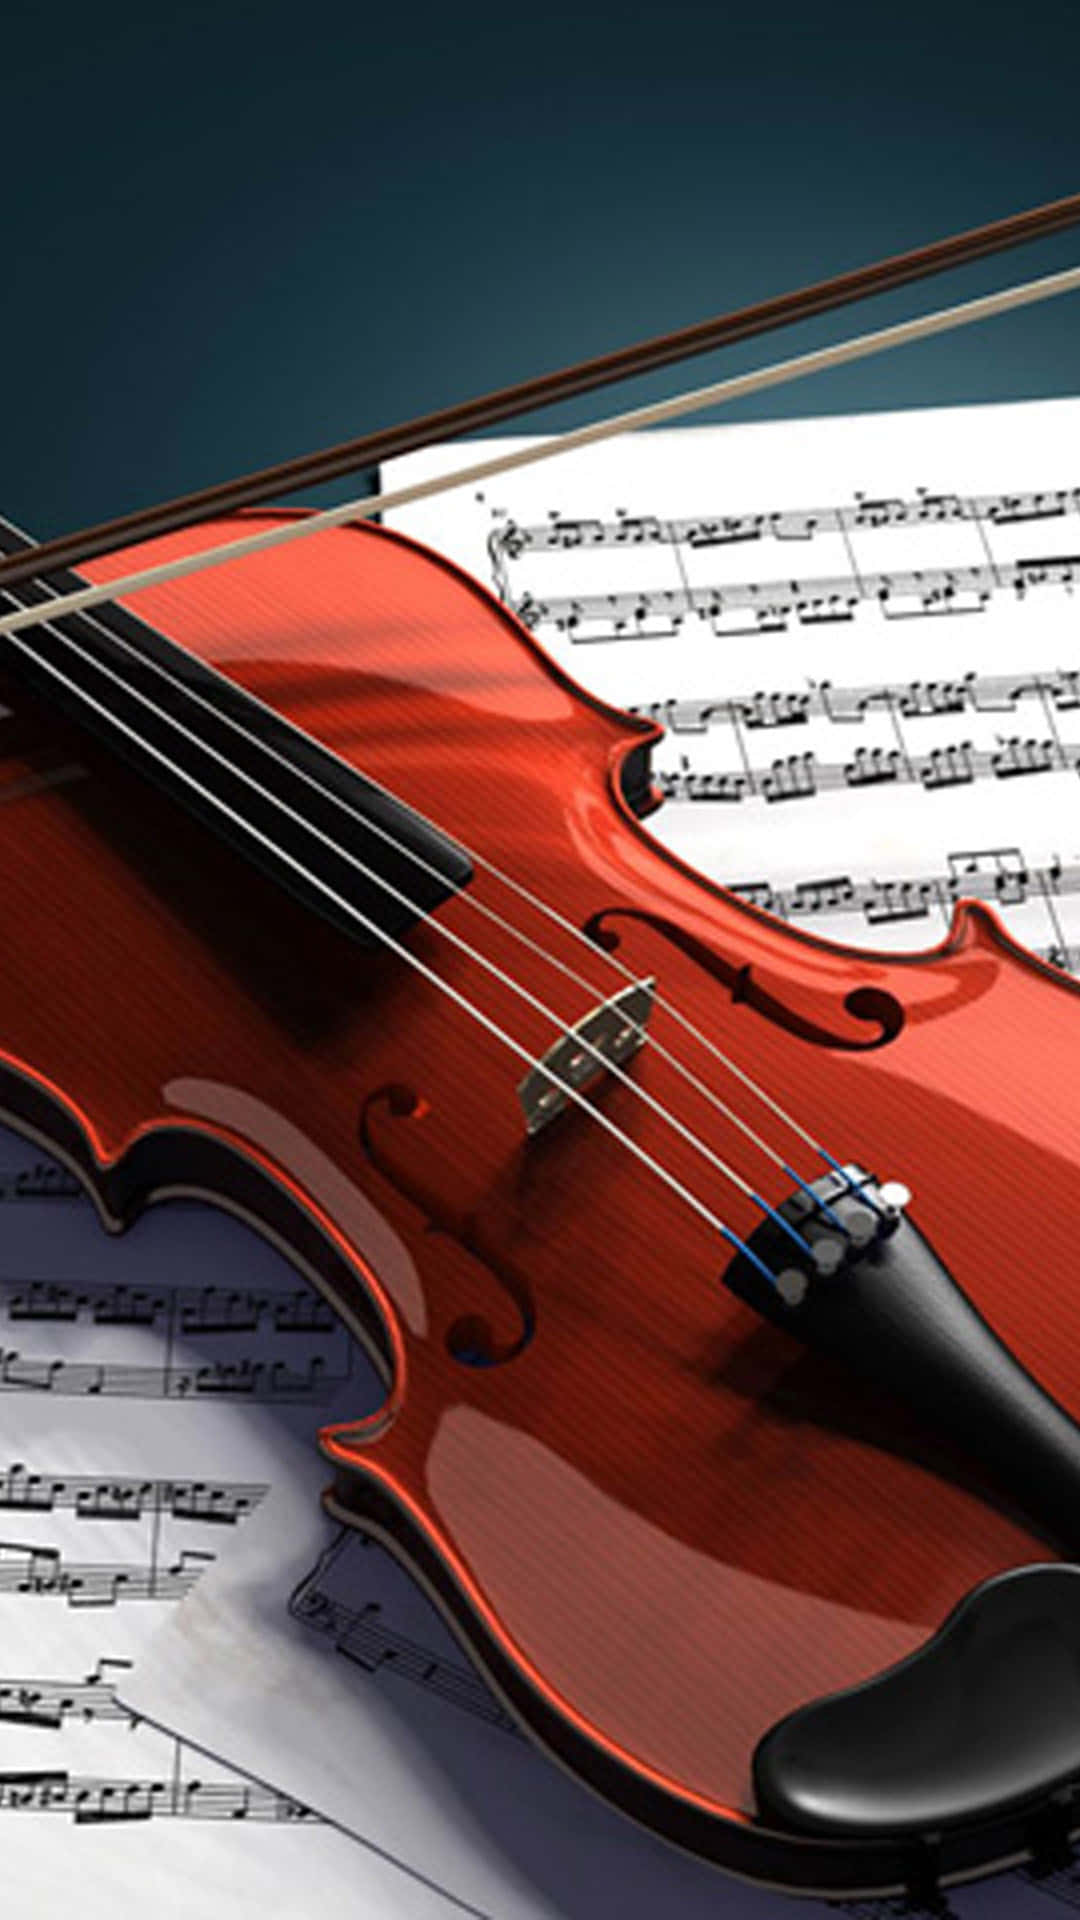 Eleganzaclassica: Capolavoro Intemporeale Del Violino